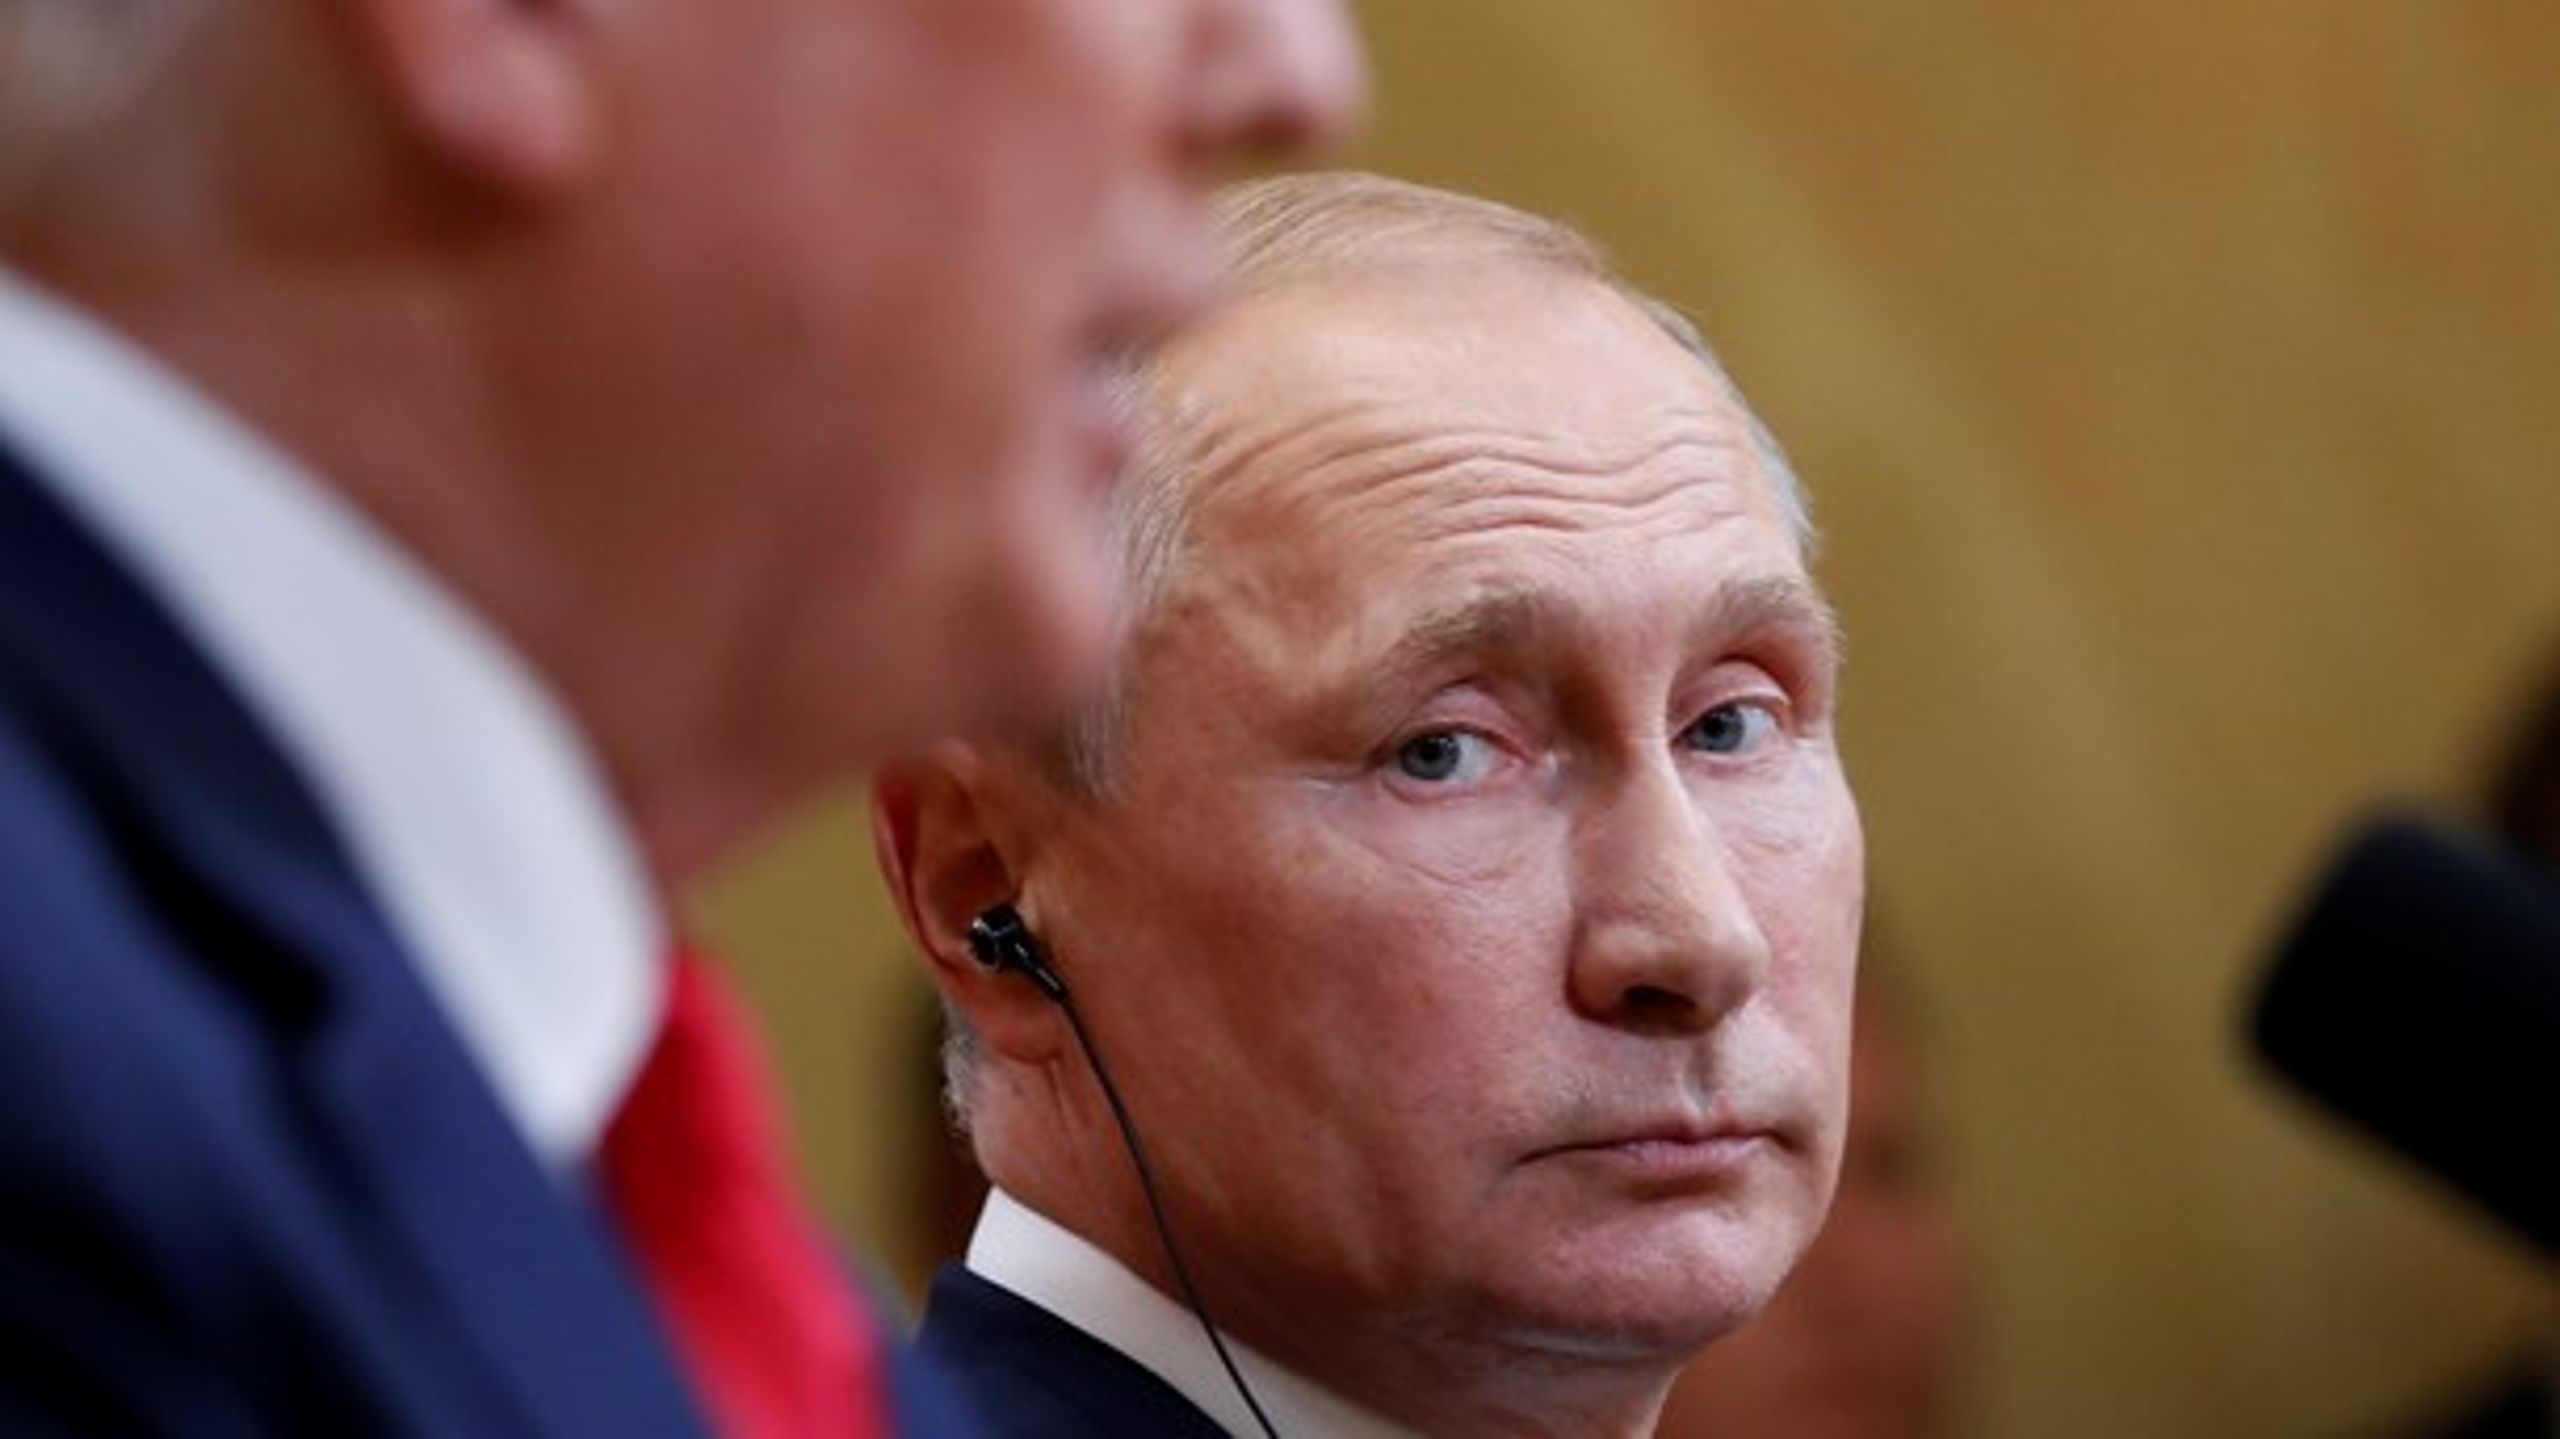 Bogen er bedst, når den fokuserer på Putins misinformation, skriver Christian Egander Skov.